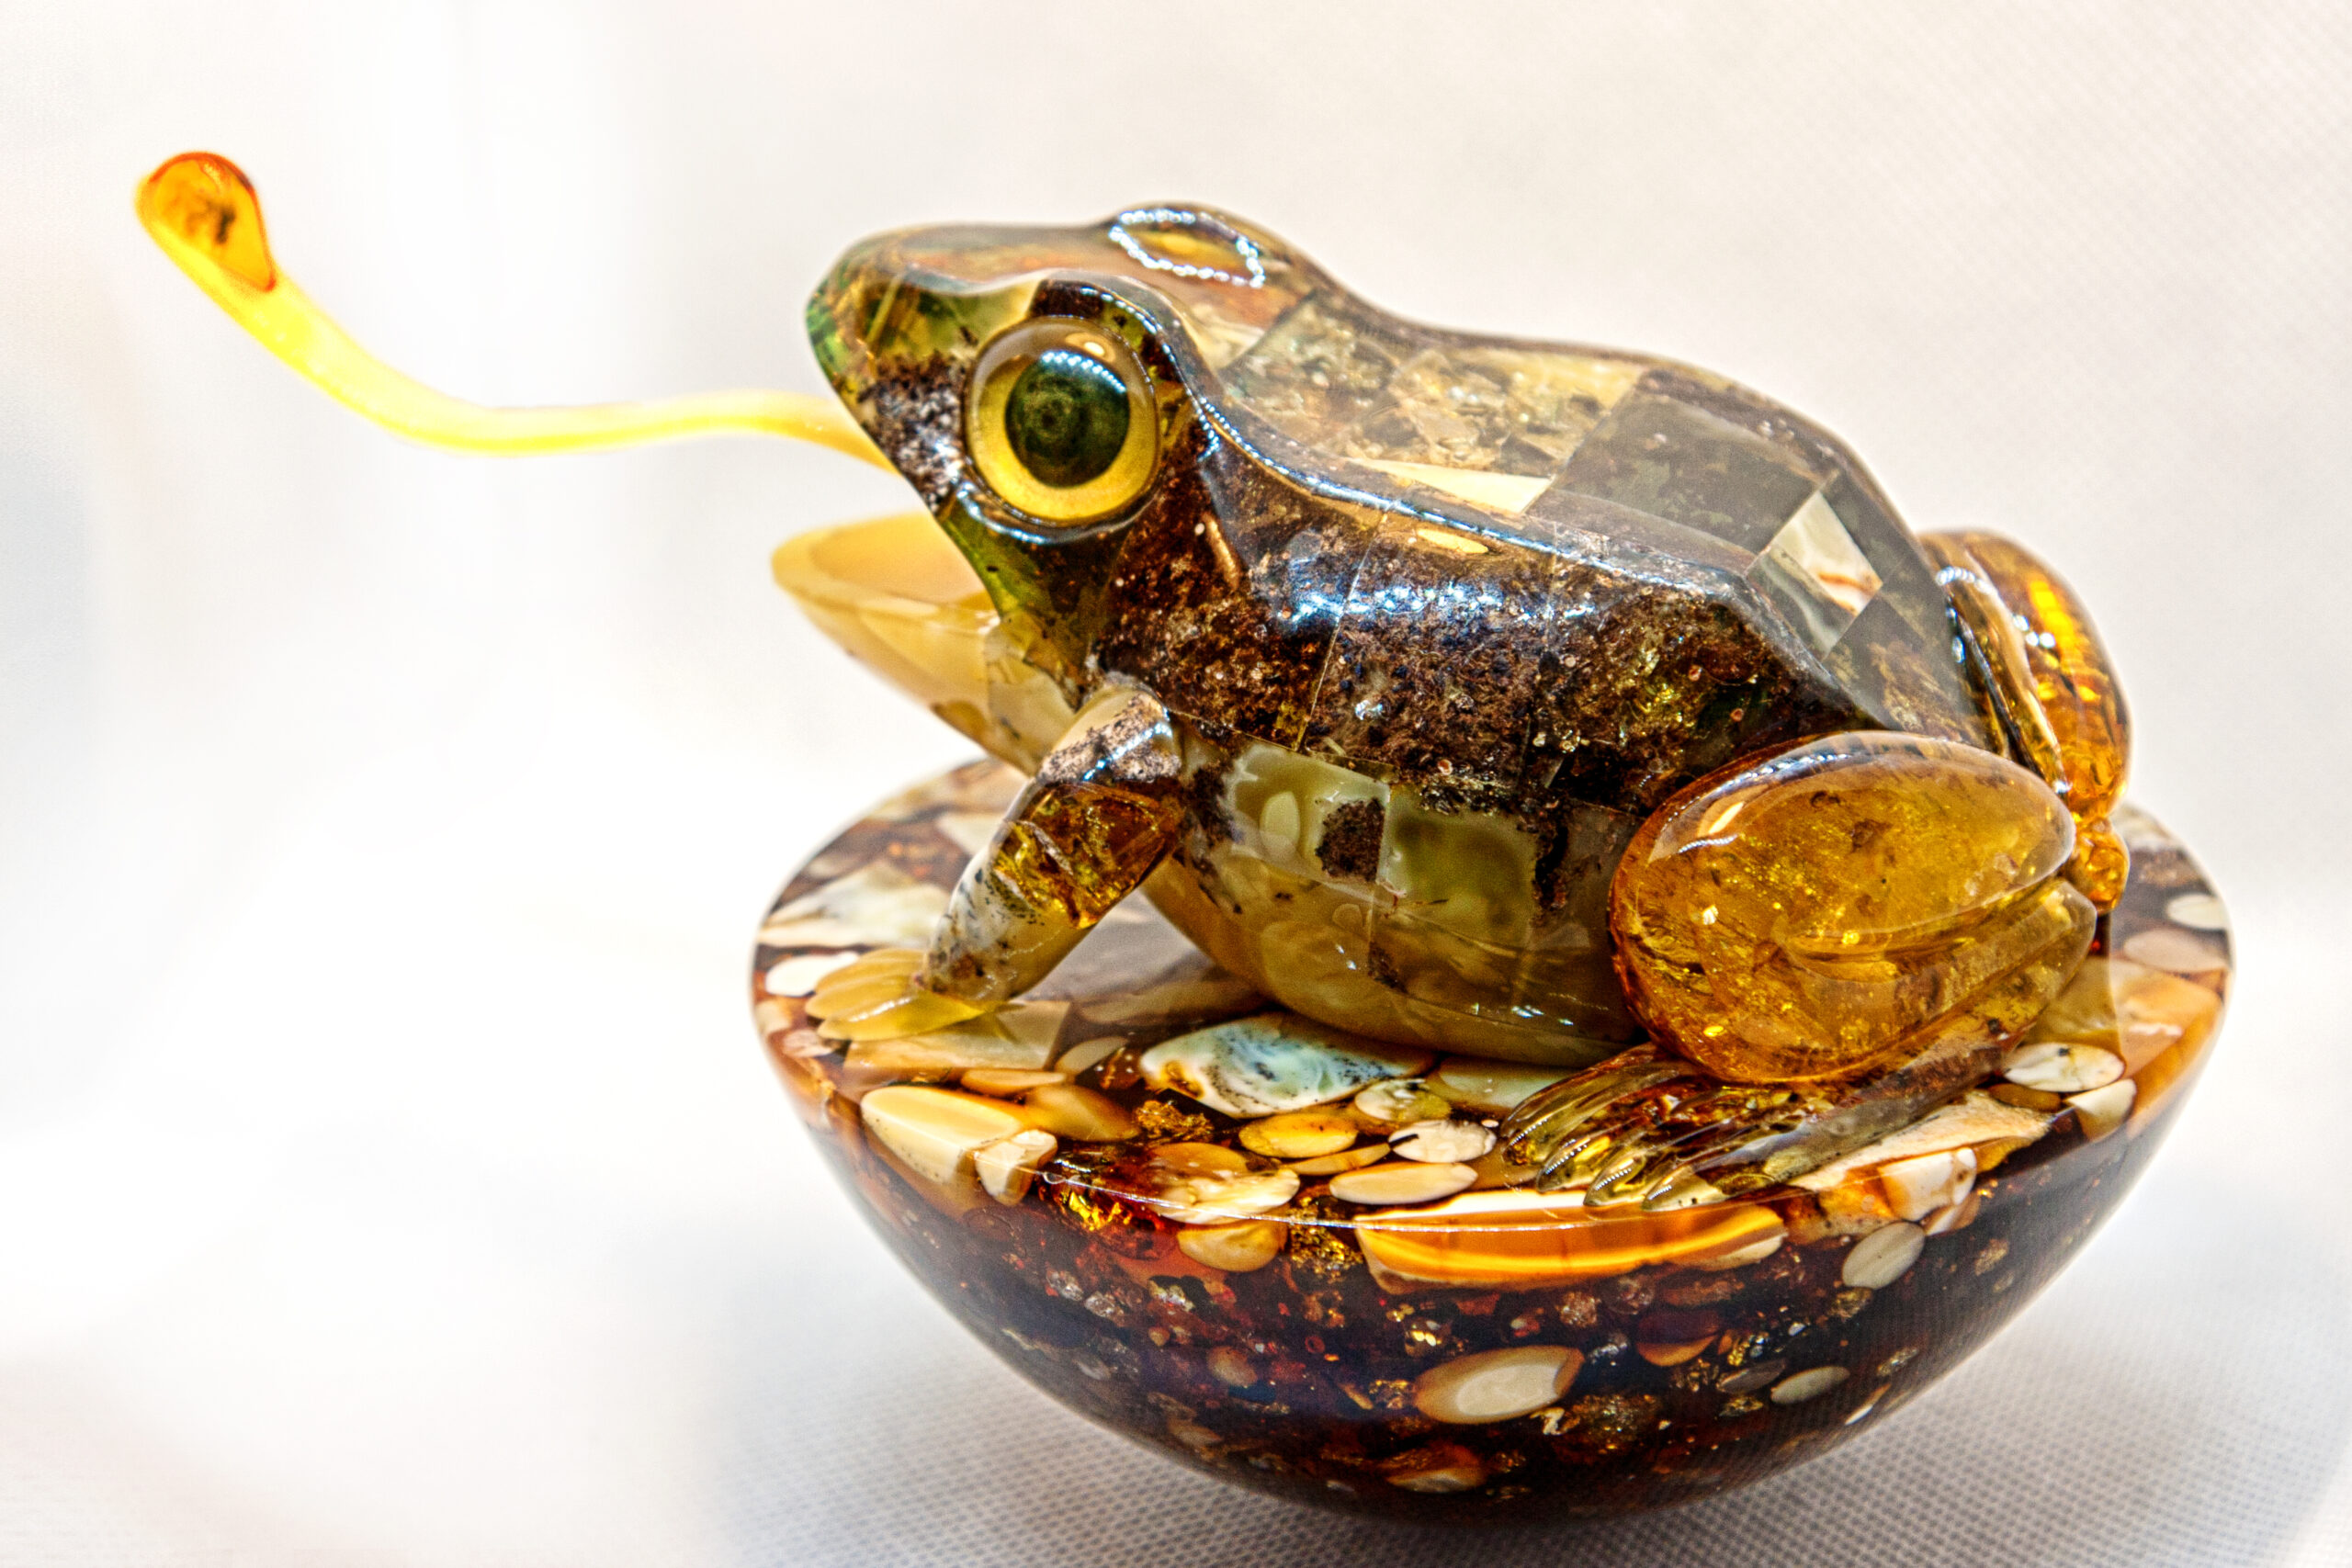 Suchergebnis Auf  Für: Frosch - Sammlerfiguren / Dekorative  Sammlerstücke: Küche, Haushalt & Wohnen